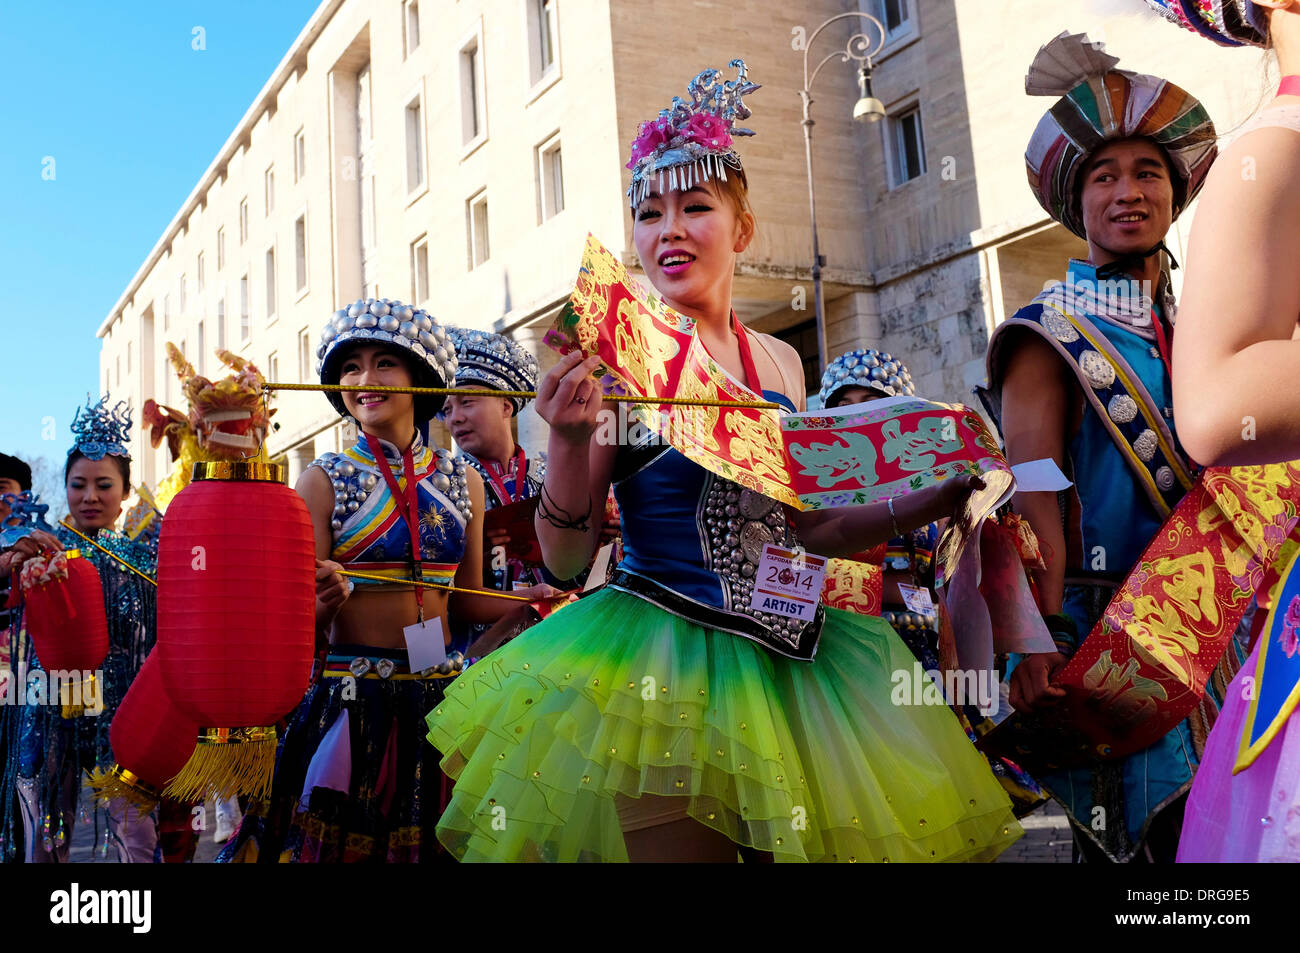 Rome, Italie 25 janvier 2014 Artistes Célébrez le Nouvel An chinois sur la Piazza Augusto Imperatore. Selon le calendrier chinois, c'est l'année de l'horse Crédit : Fabrizio Troiani/Alamy Live News Banque D'Images